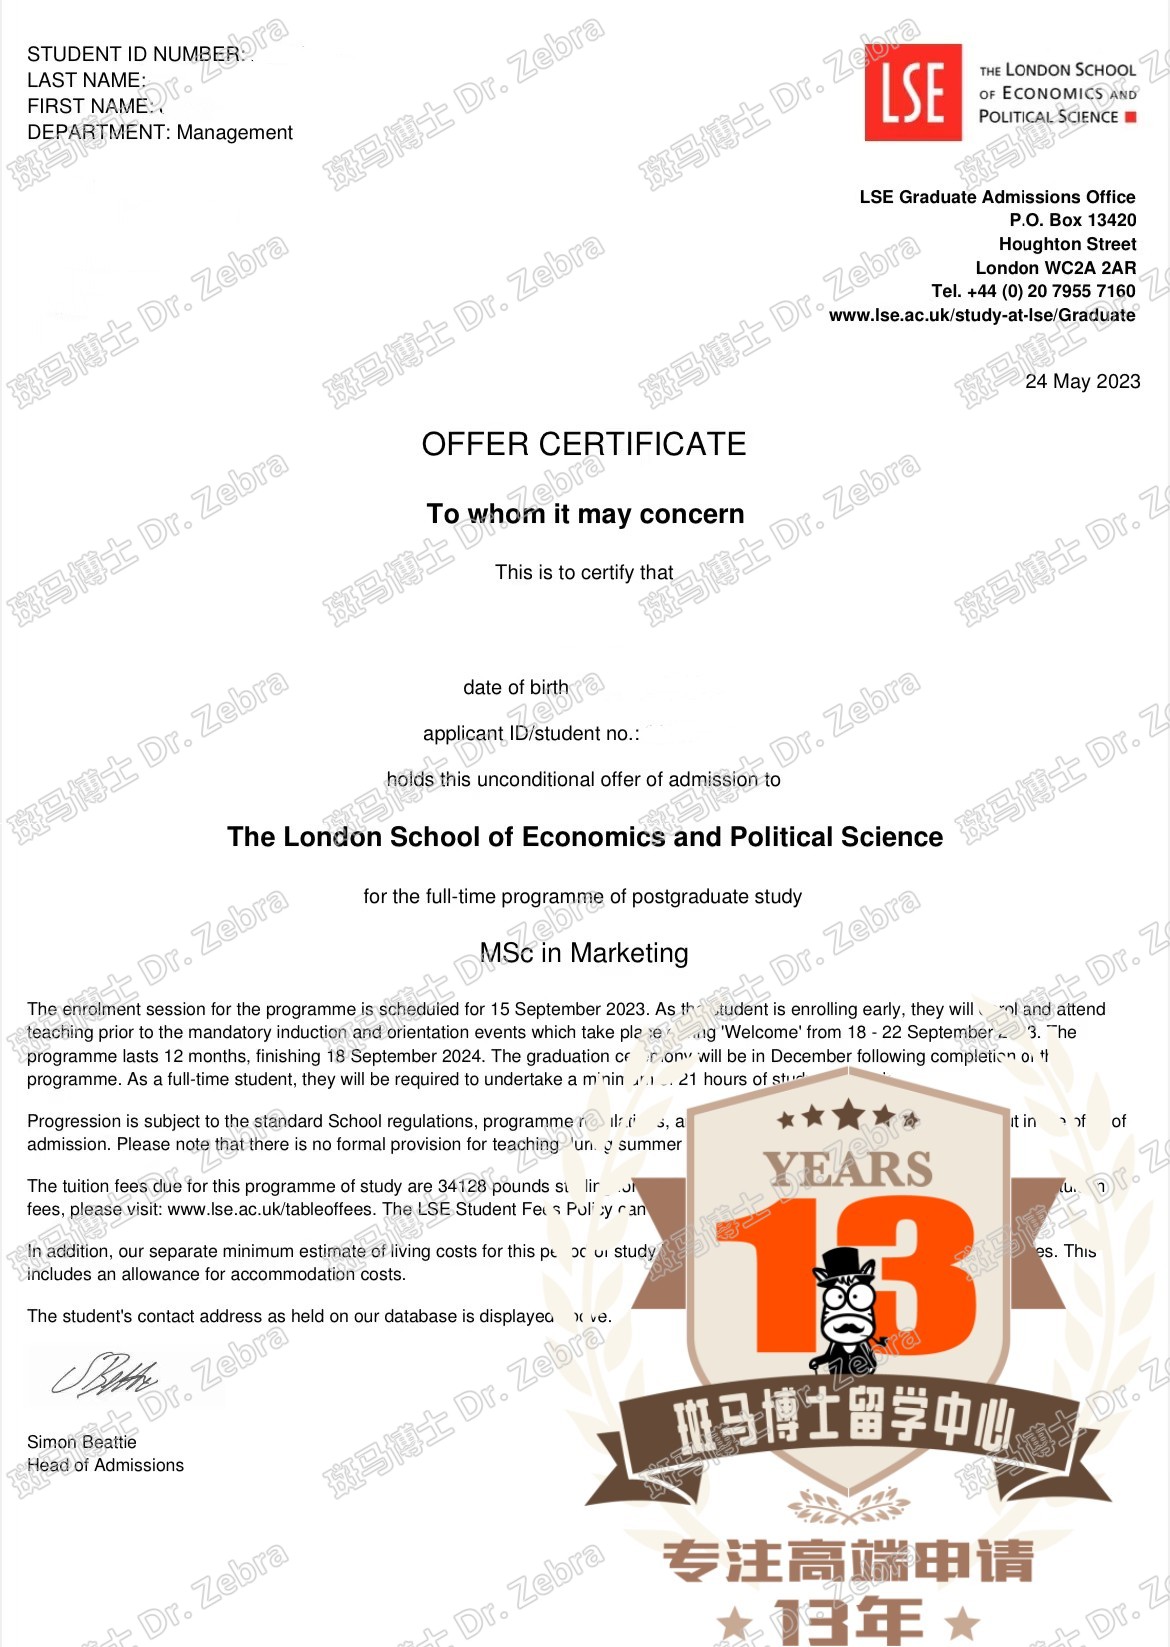 斑马博士，斑马博士留学中心，伦敦政治经济学院，The London School of Economics and Political Science (LSE)， MSc Marketing，市场营销硕士